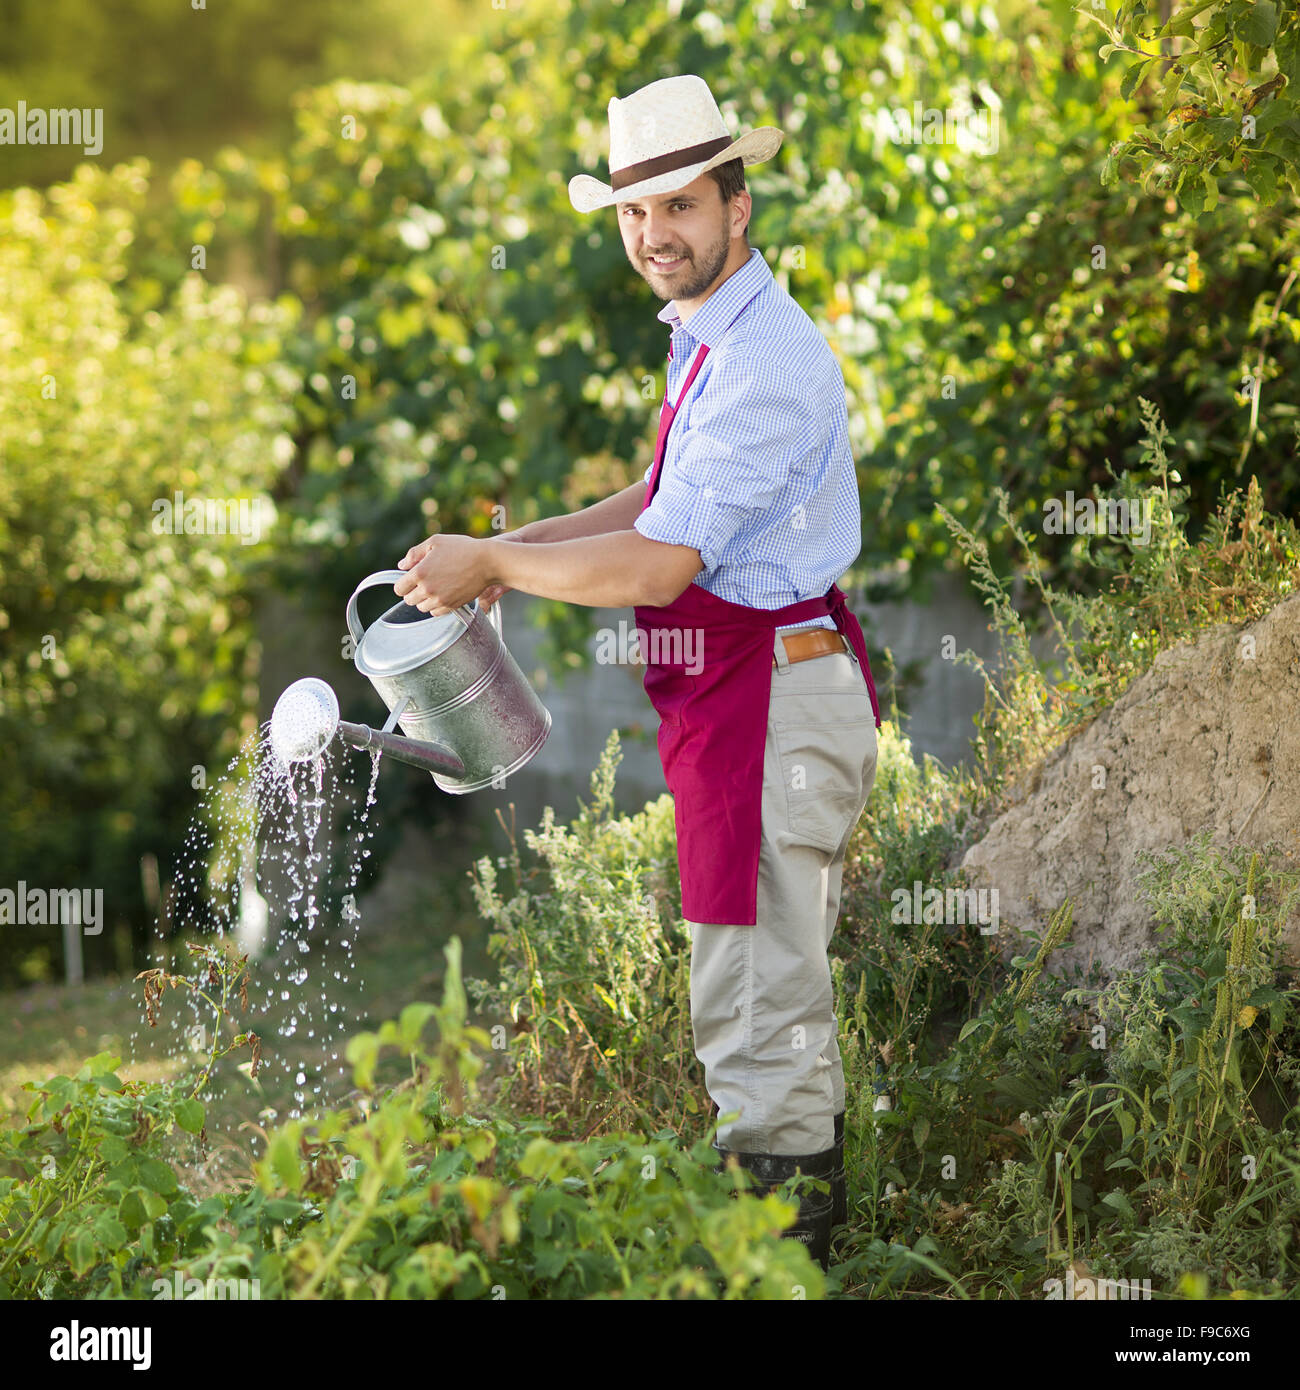 Young male gardener is watering plants in garden Stock Photo